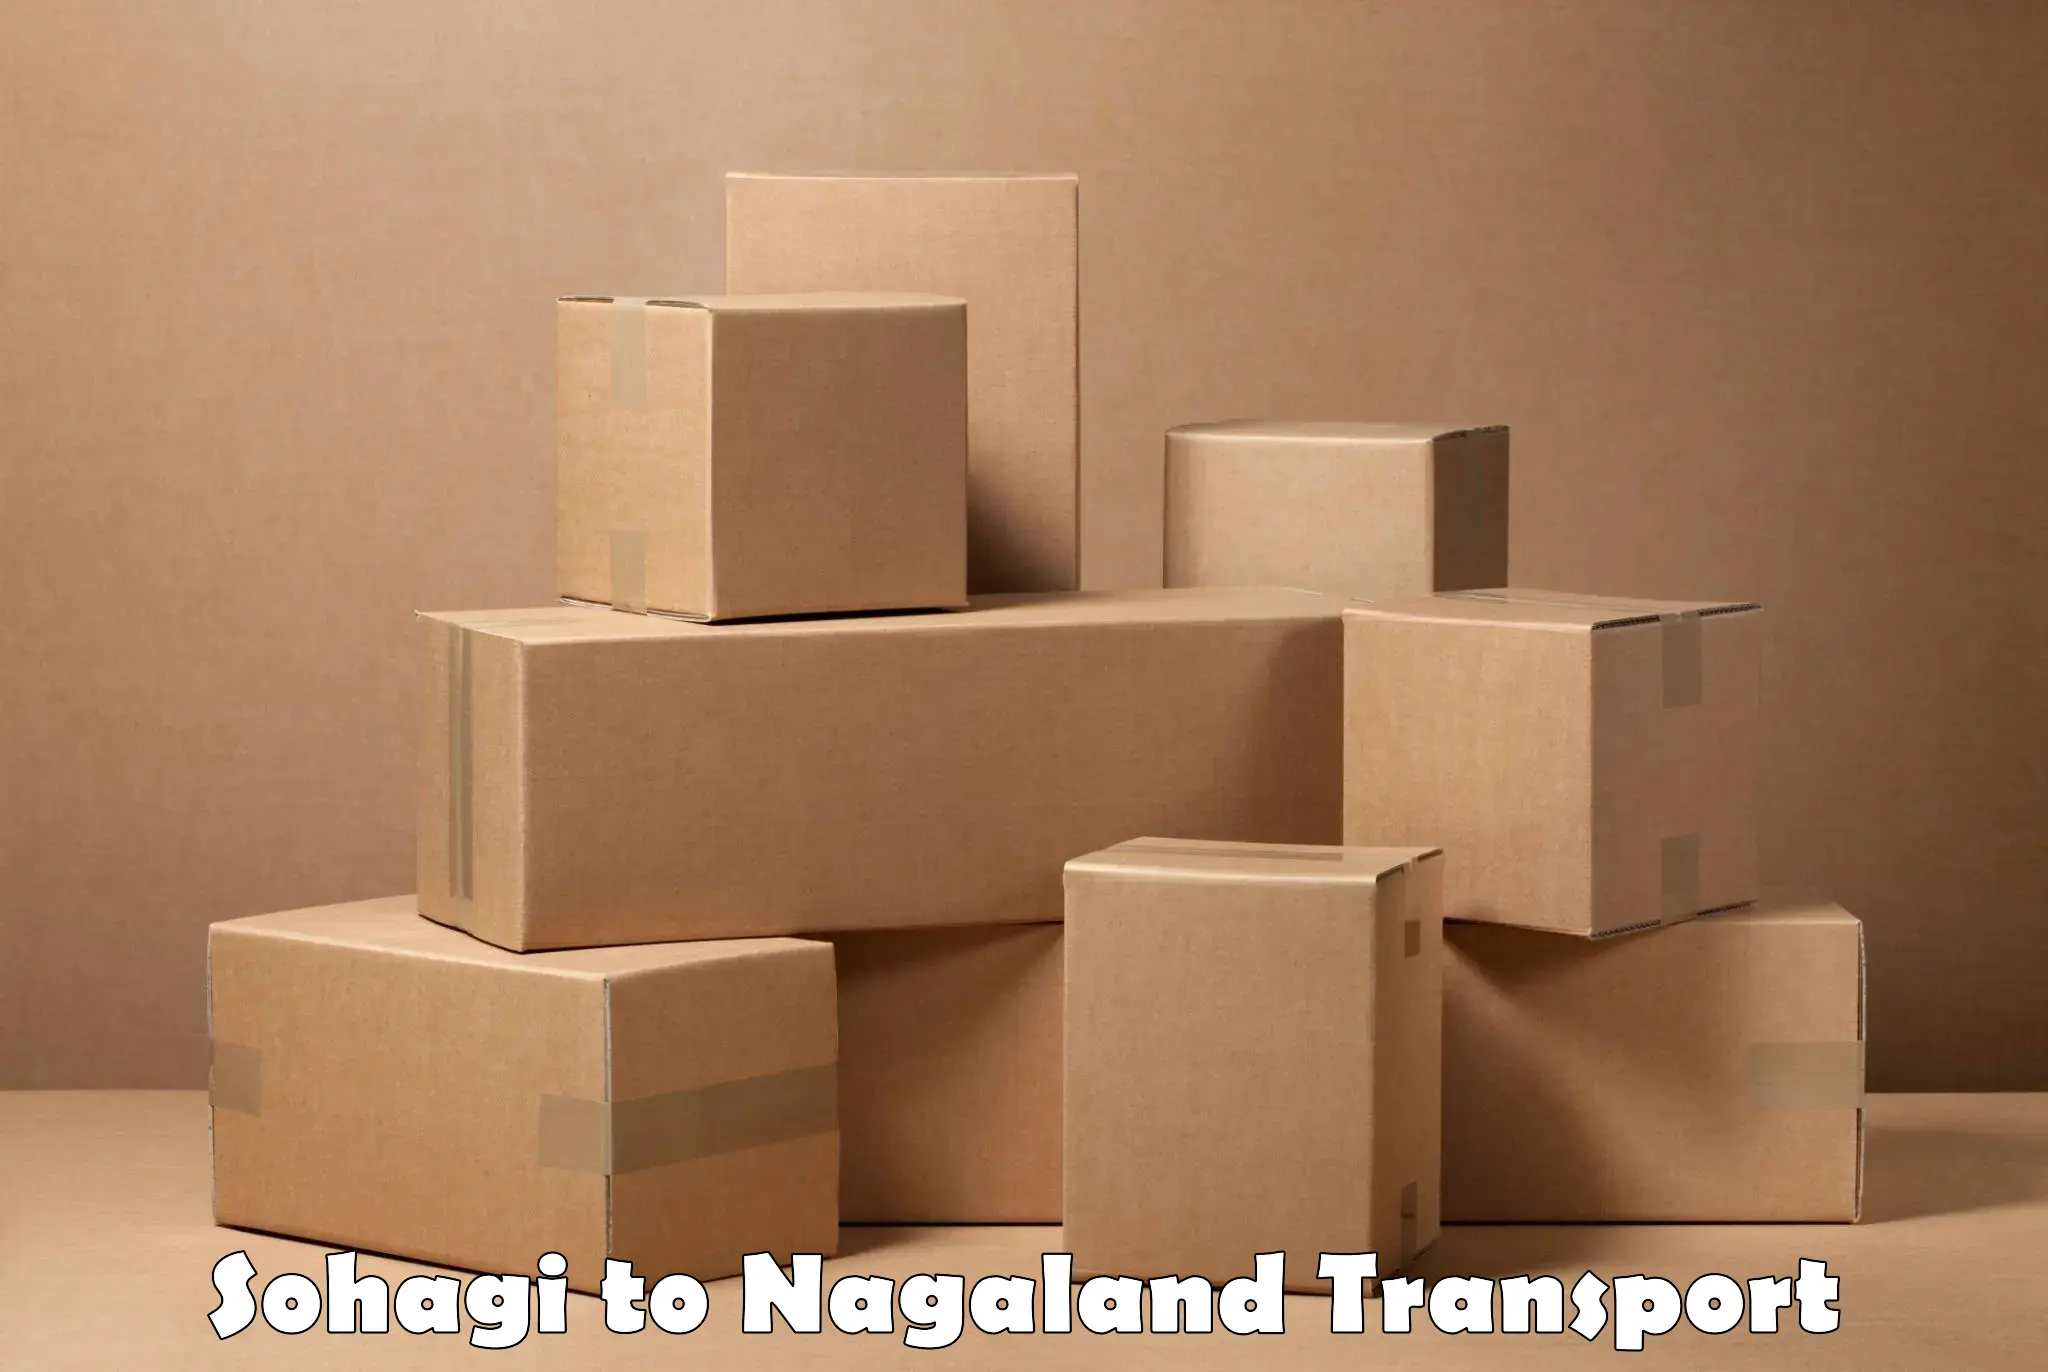 Lorry transport service Sohagi to Nagaland